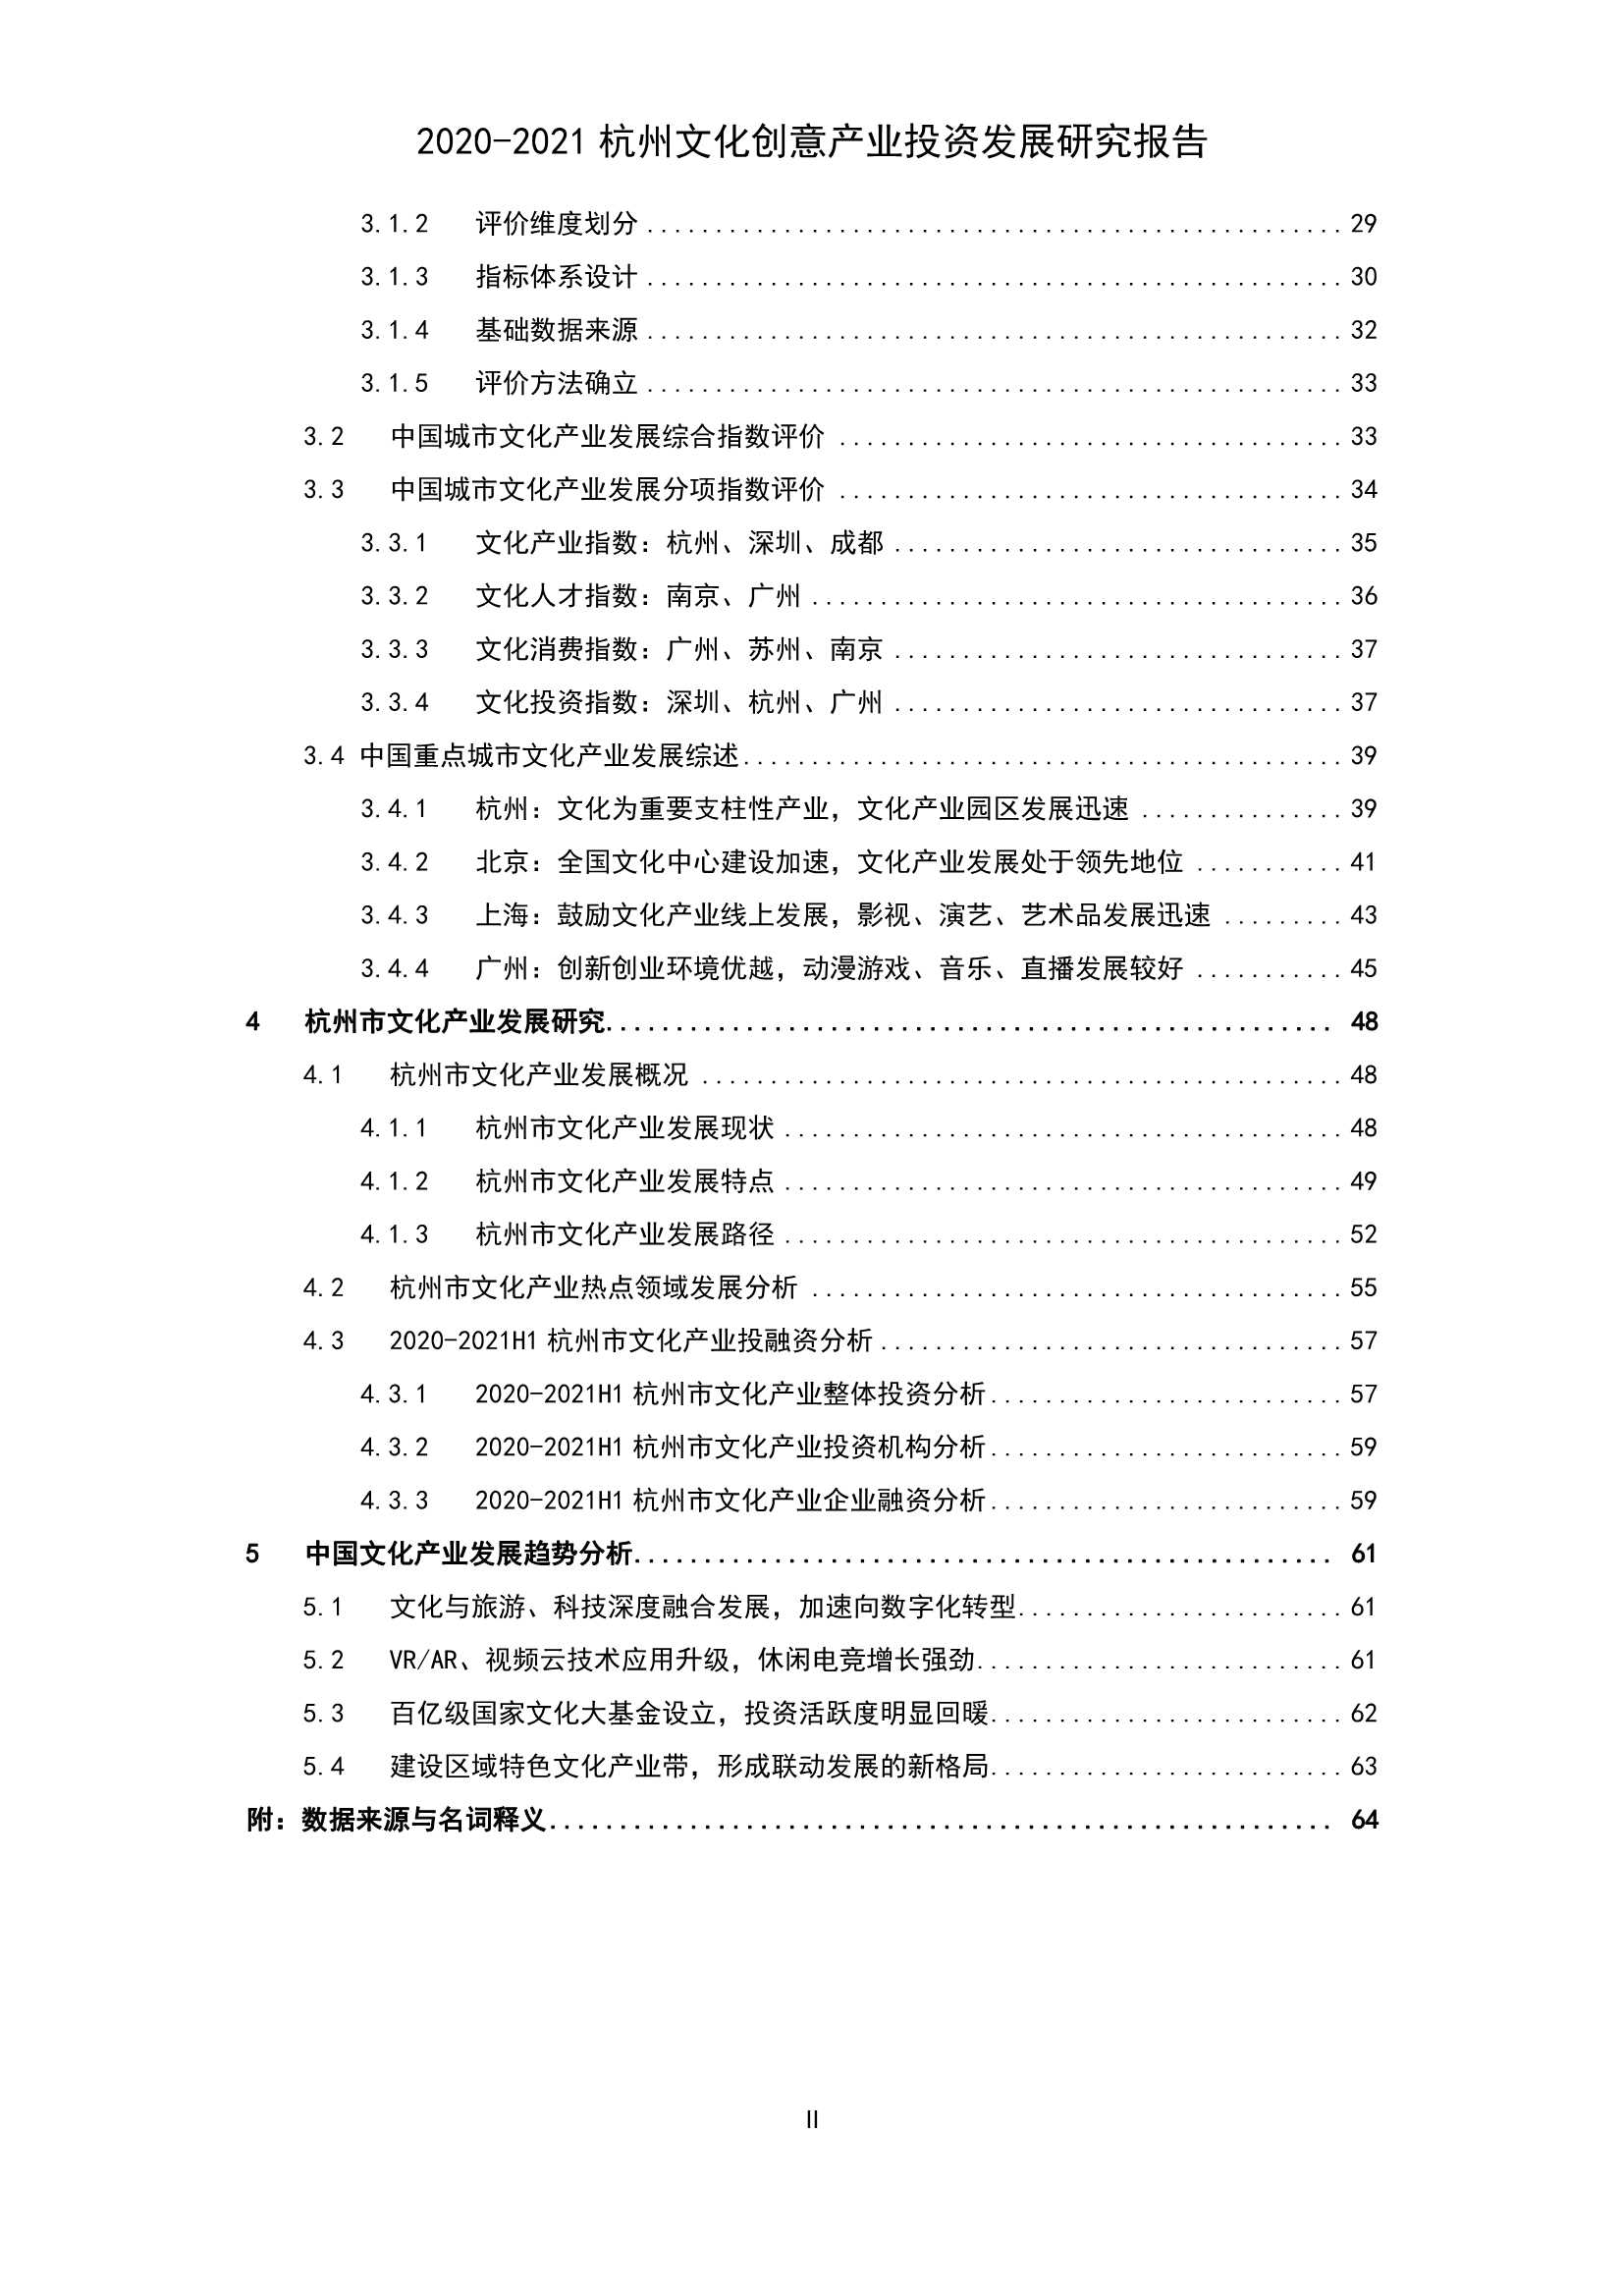 清科-2020-2021杭州文化创意产业投资发展研究报告-2021.11-74页